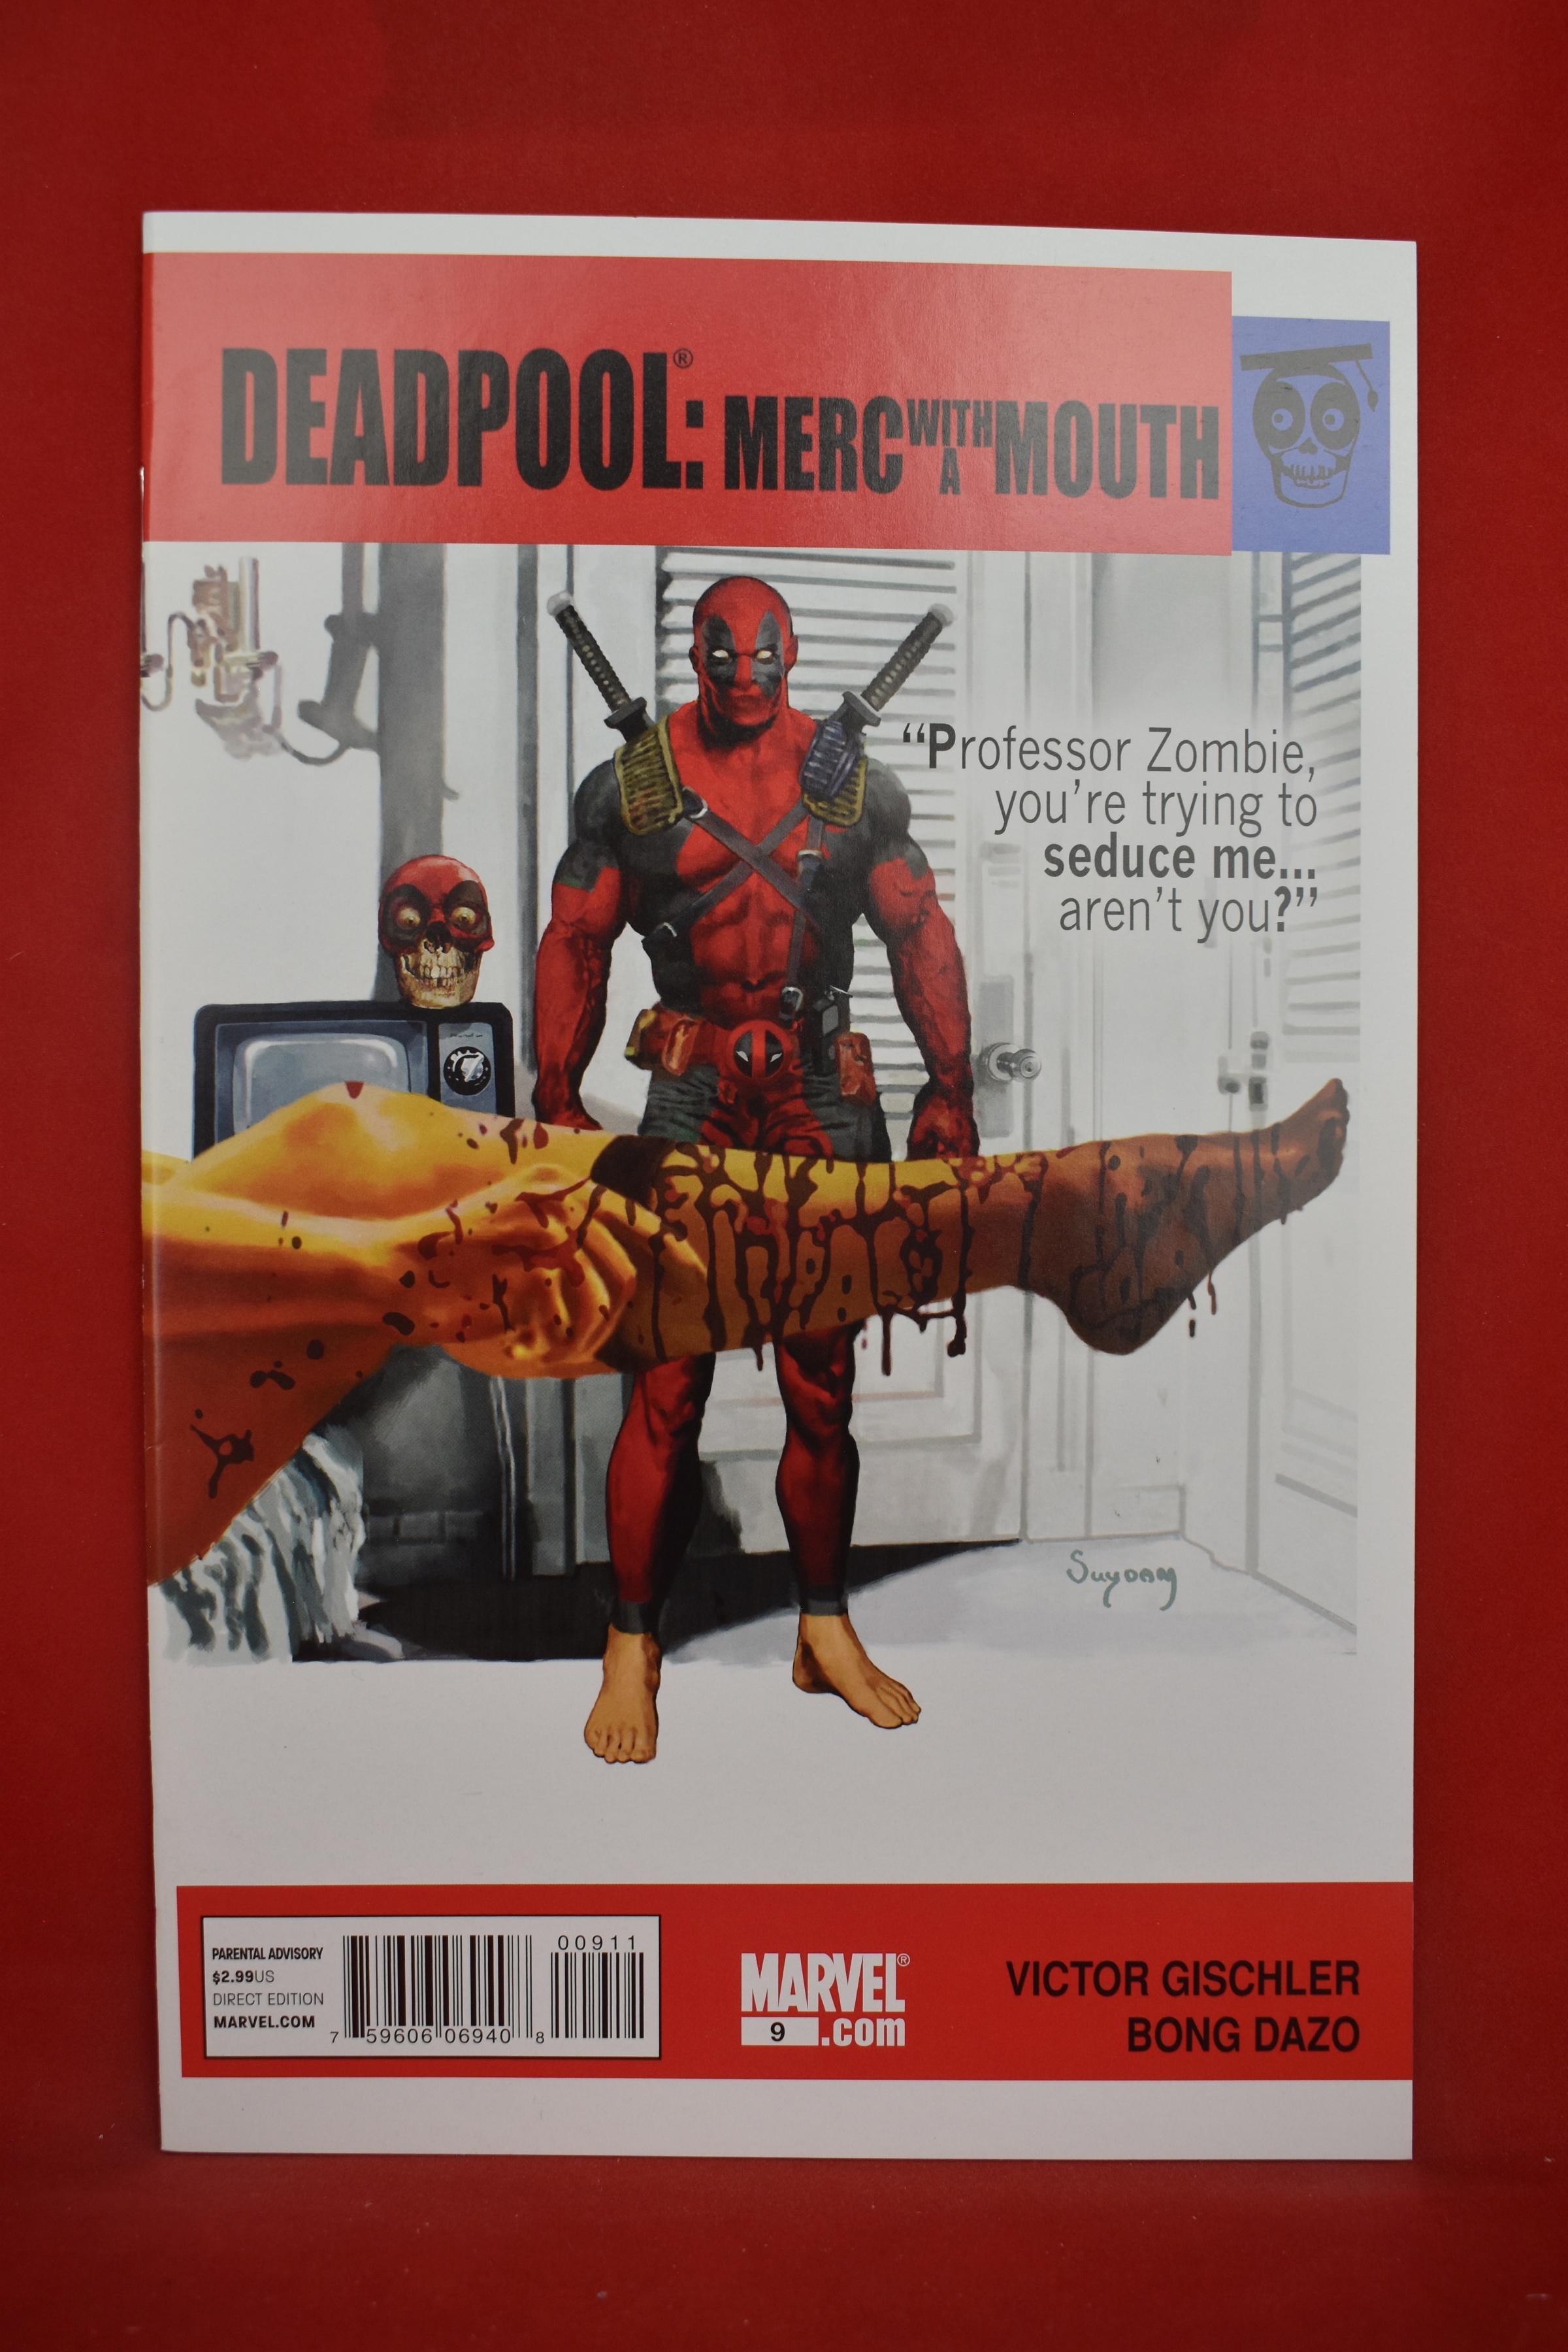 DEADPOOL: MERC WITH A MOUTH #9 | KEY ARTHUR SUYDAM "THE GRADUATE" COVER